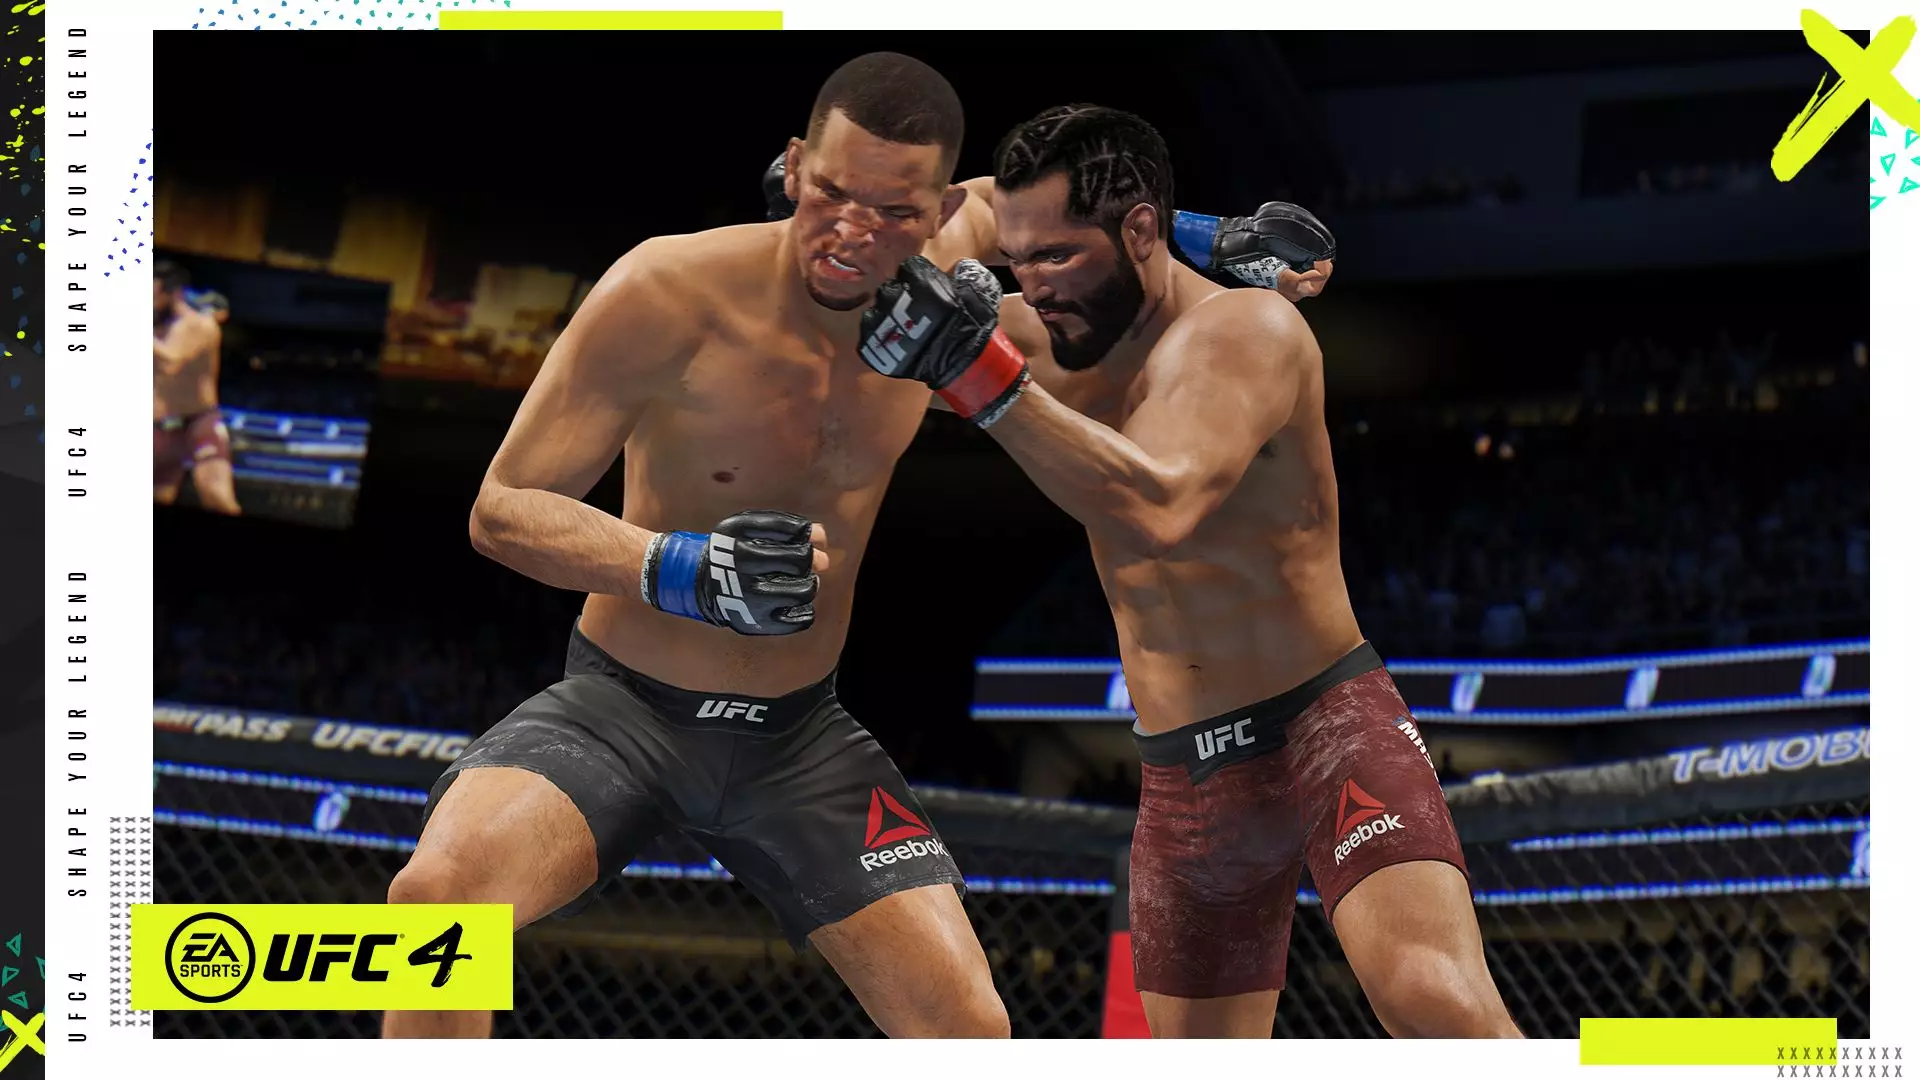 Images: EA Sports UFC 4